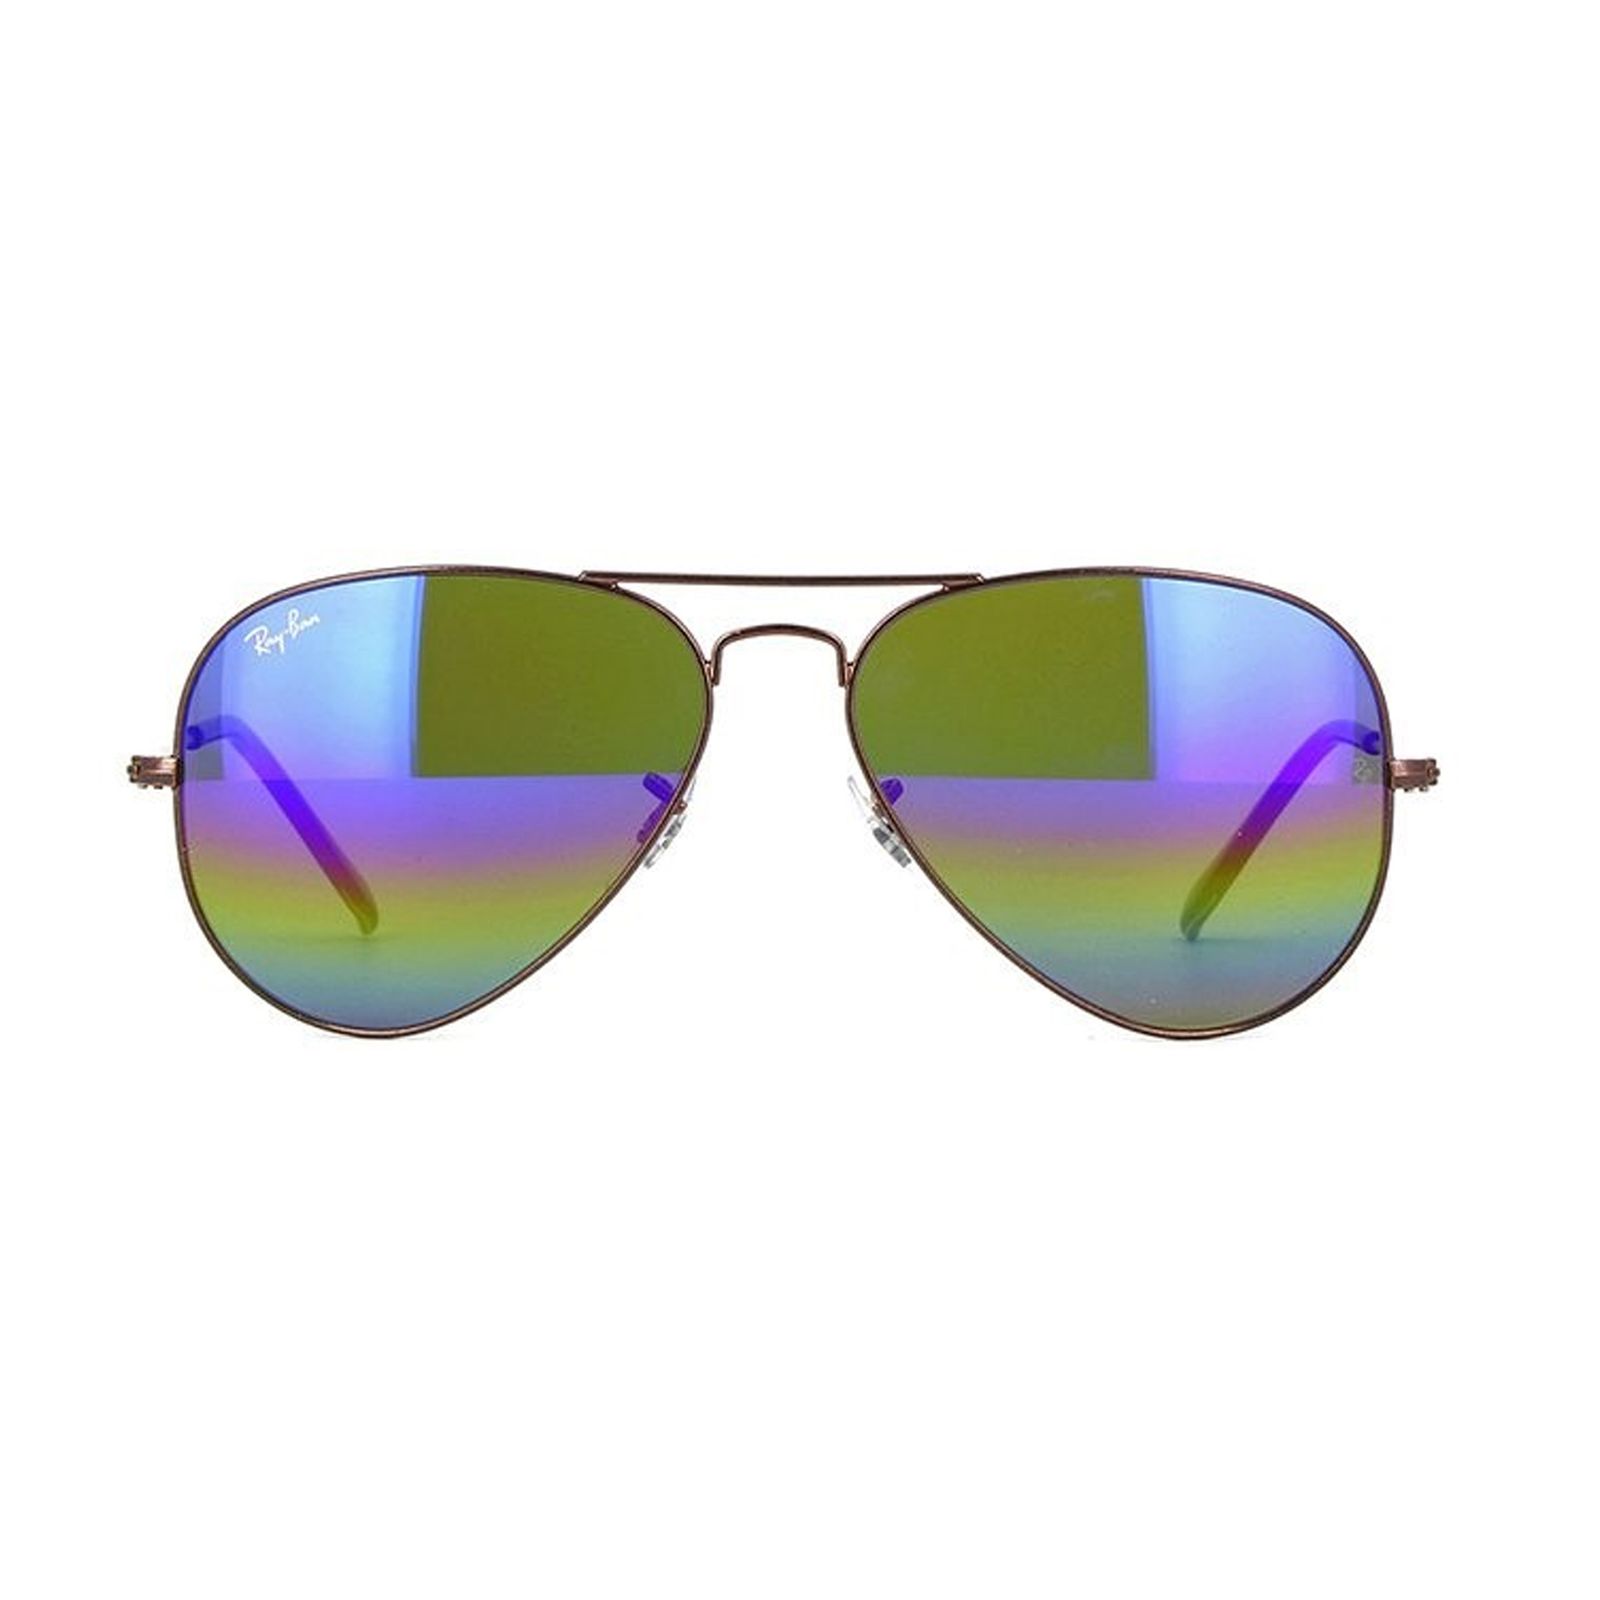 عینک آفتابی ری بن مدل 3025-9019/C2-58 -  - 3